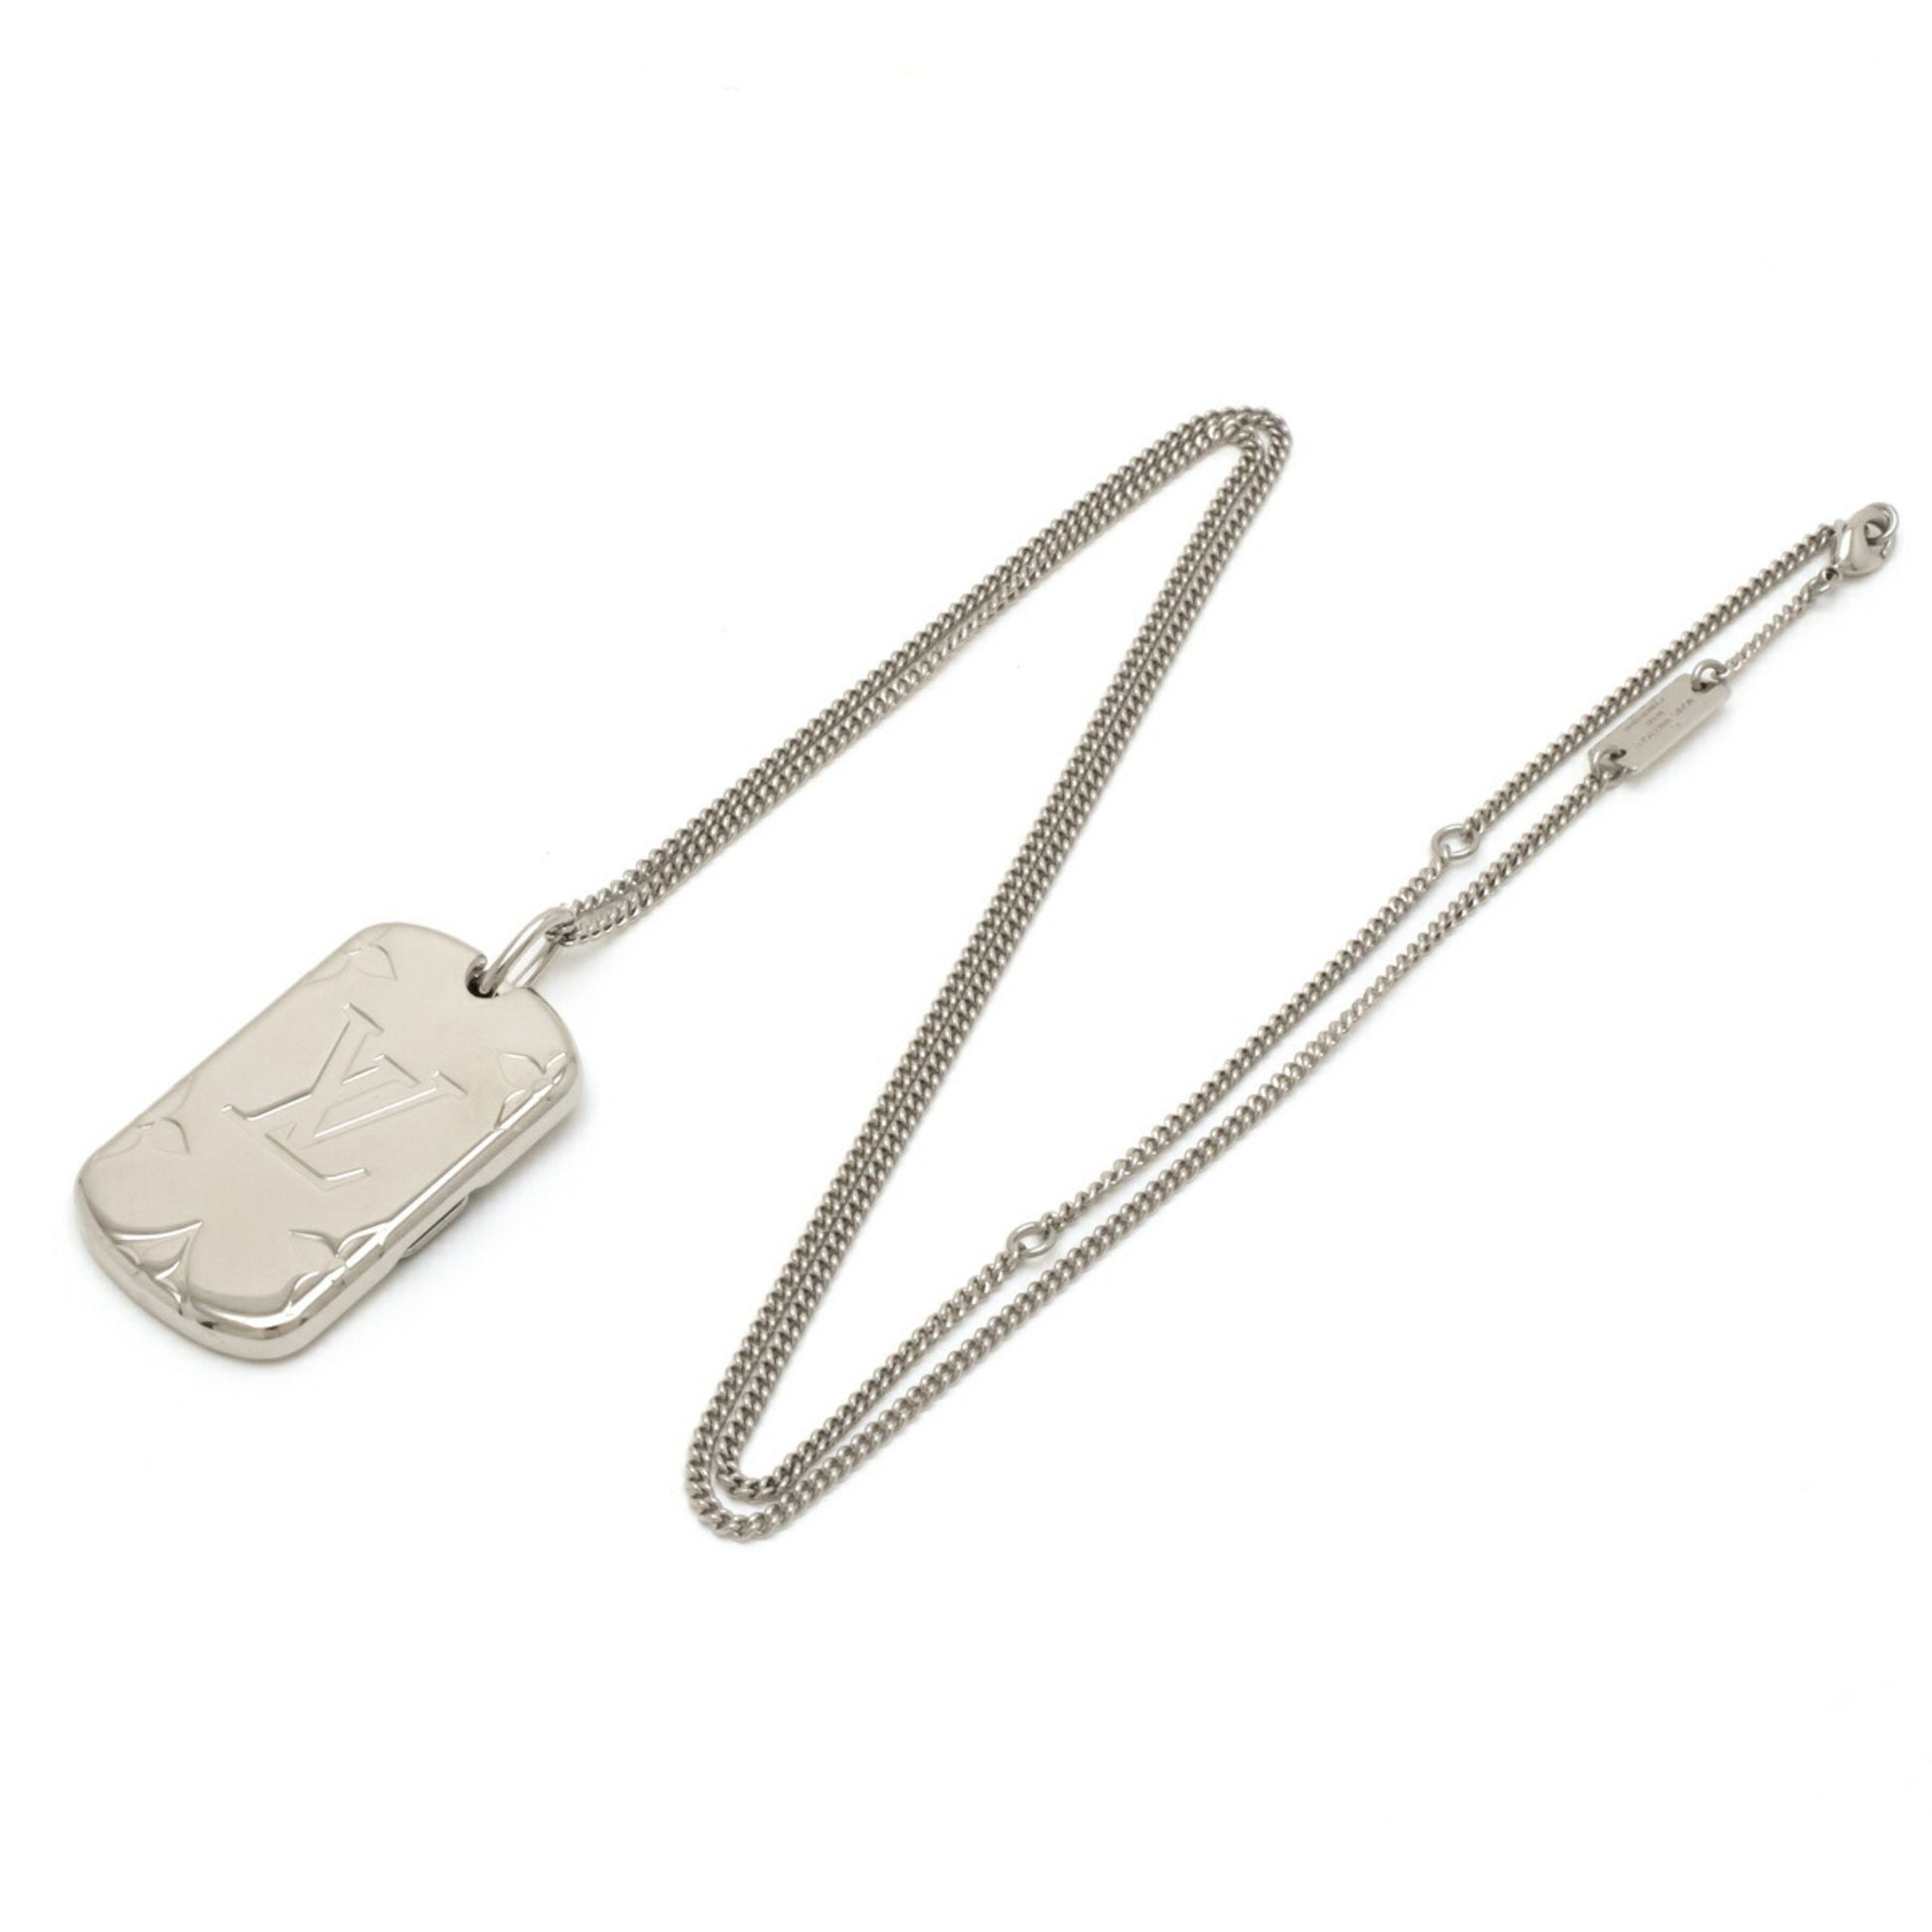 Louis Vuitton Monogram Locket Pendant Necklace - Silver-Tone Metal Pendant  Necklace, Necklaces - LOU221611